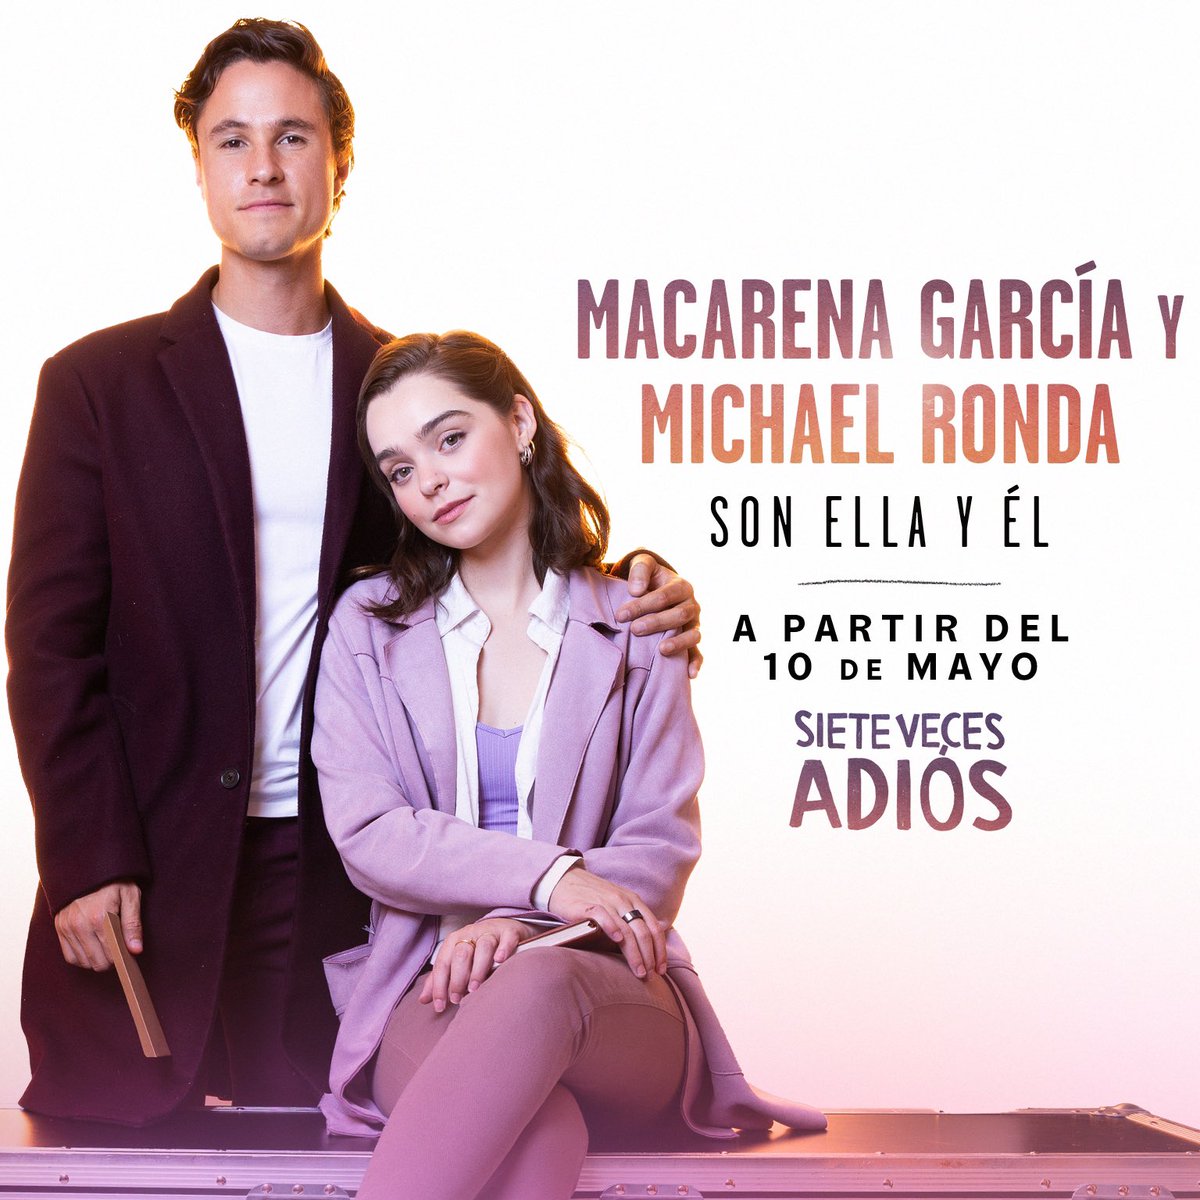 El amor se transforma y llega una nueva etapa en #SieteVecesAdiós ❤️‍🩹. @macagarciarom y @Michaelronda estarán a partir del 10 de mayo le darán vida a Él y Ella ¿Emocionados? 🤩🤩